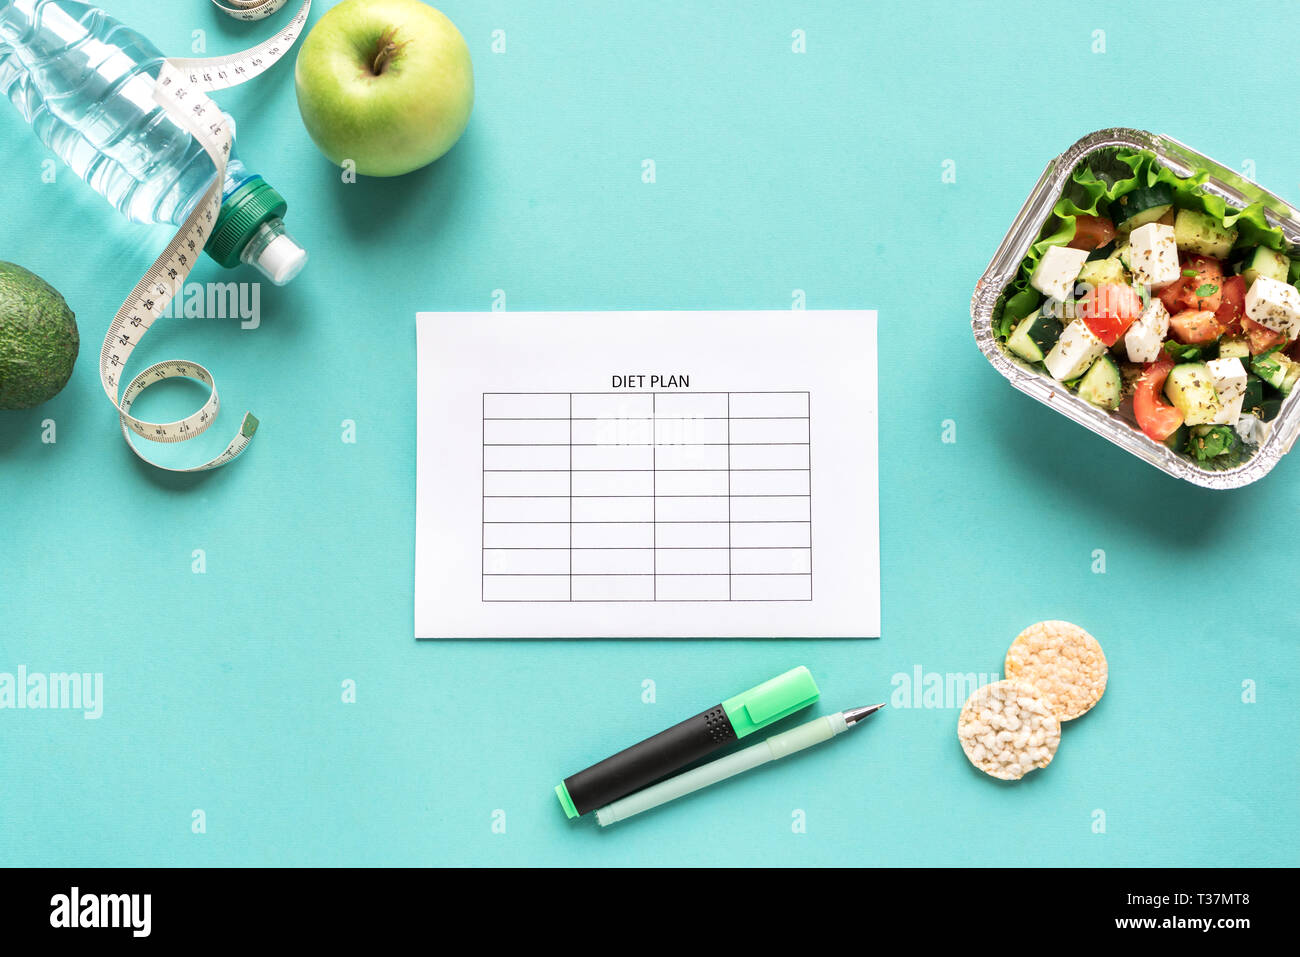 Diet Meal Plan mockup mit Wasser, Obst, Salat und Maßband. Fitness Ernährung, Diät Konzept auf Blau, top anzeigen, kopieren. Stockfoto